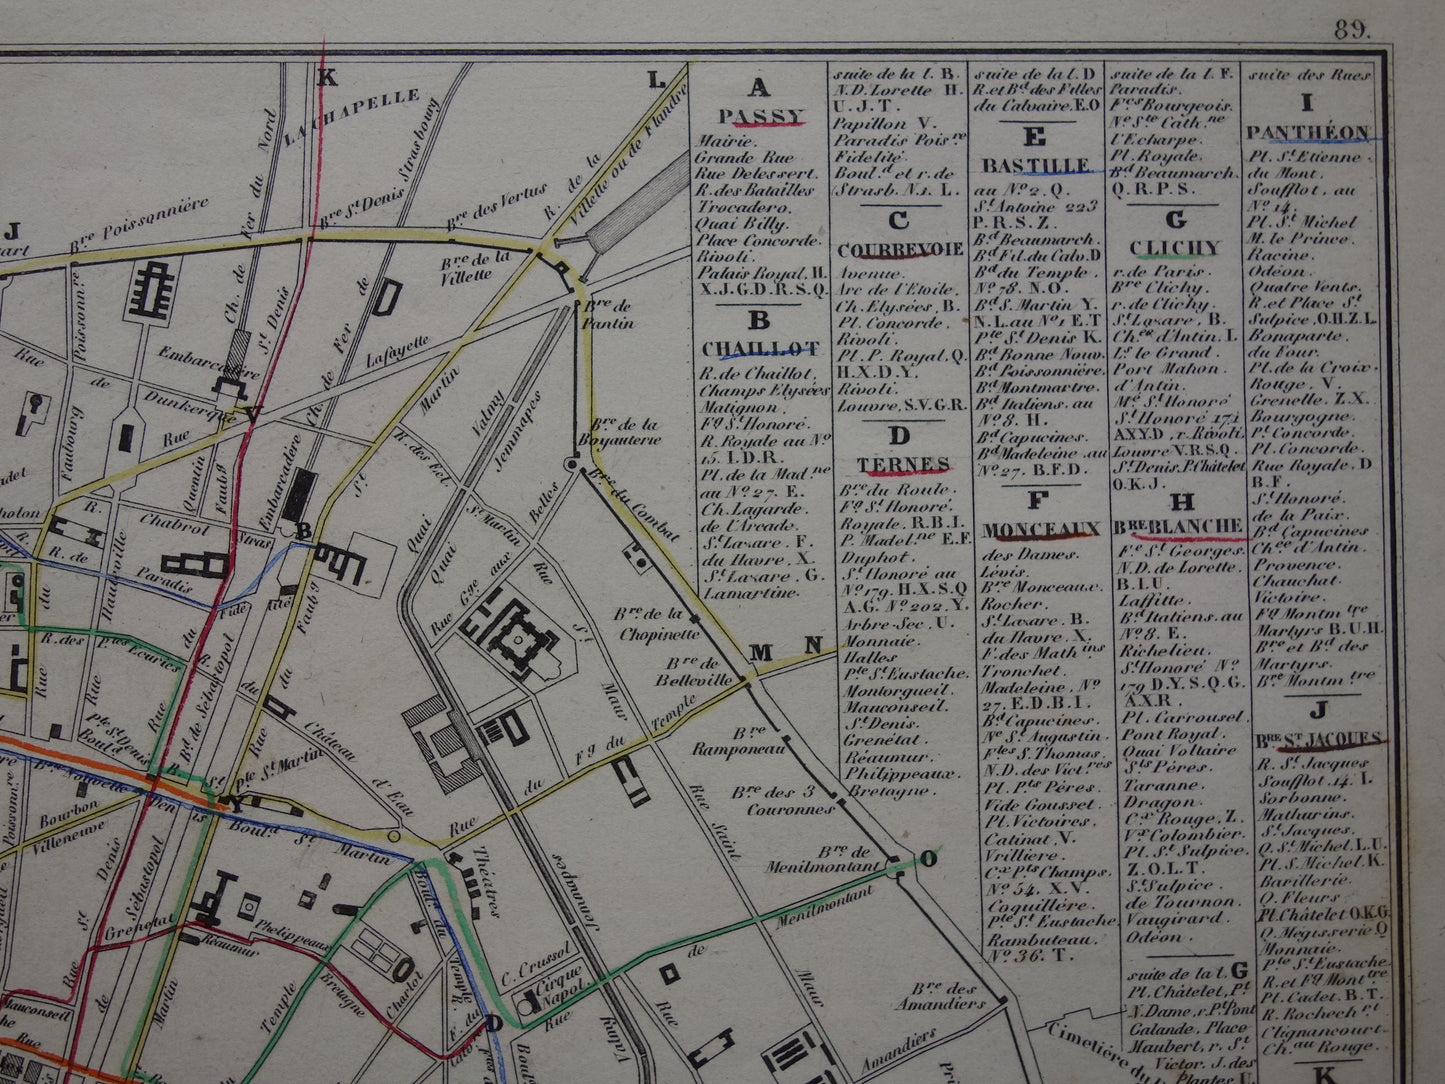 Oude kaart van Parijs met routes van de paardentram / omnibus - zeldzame antieke kaart van Parijs uit 1856 originele vintage plattegrond